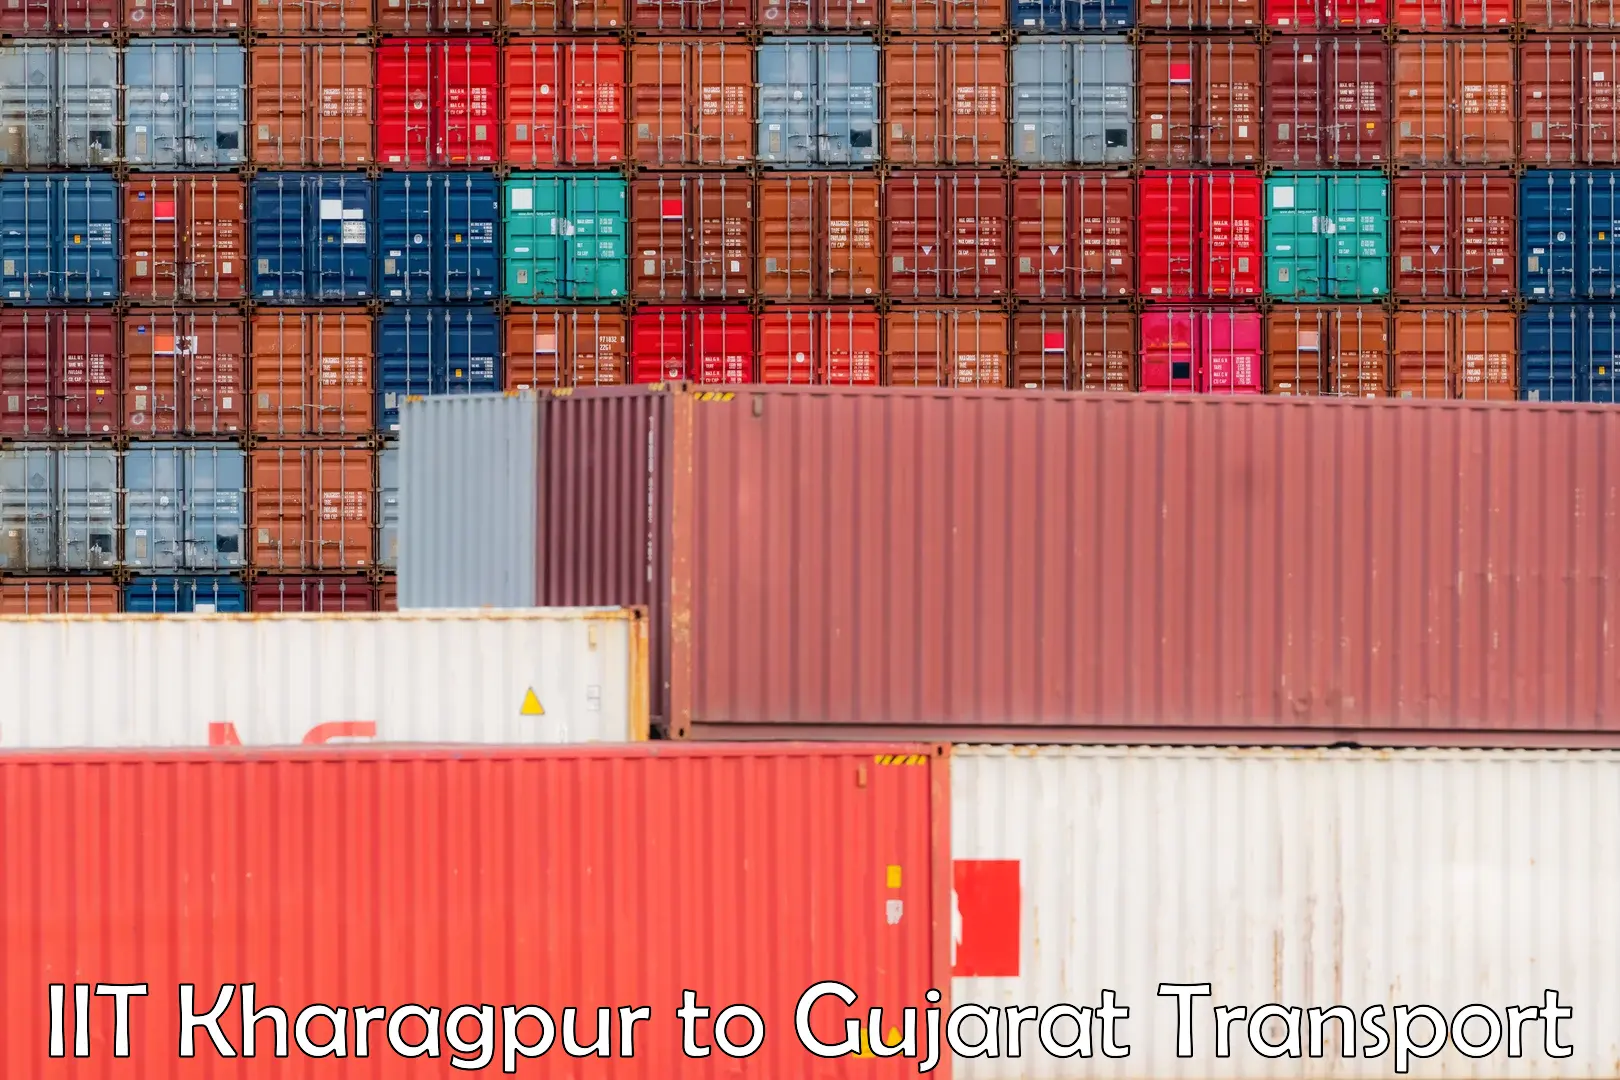 Furniture transport service IIT Kharagpur to Navsari